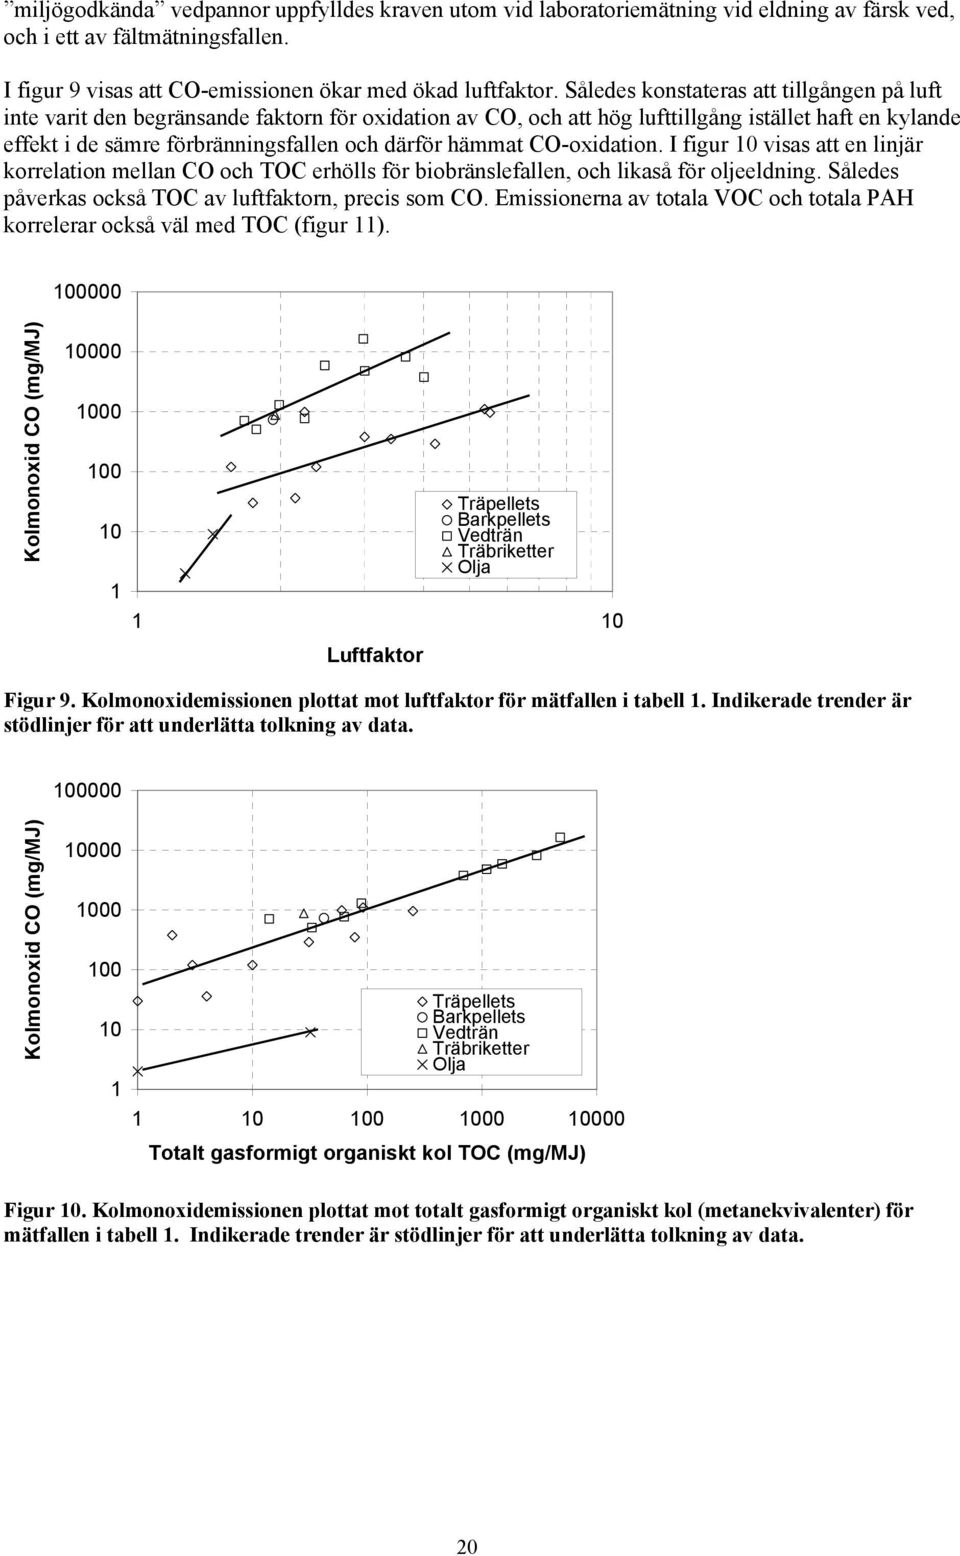 hämmat CO-oxidation. I figur 10 visas att en linjär korrelation mellan CO och TOC erhölls för biobränslefallen, och likaså för oljeeldning. Således påverkas också TOC av luftfaktorn, precis som CO.